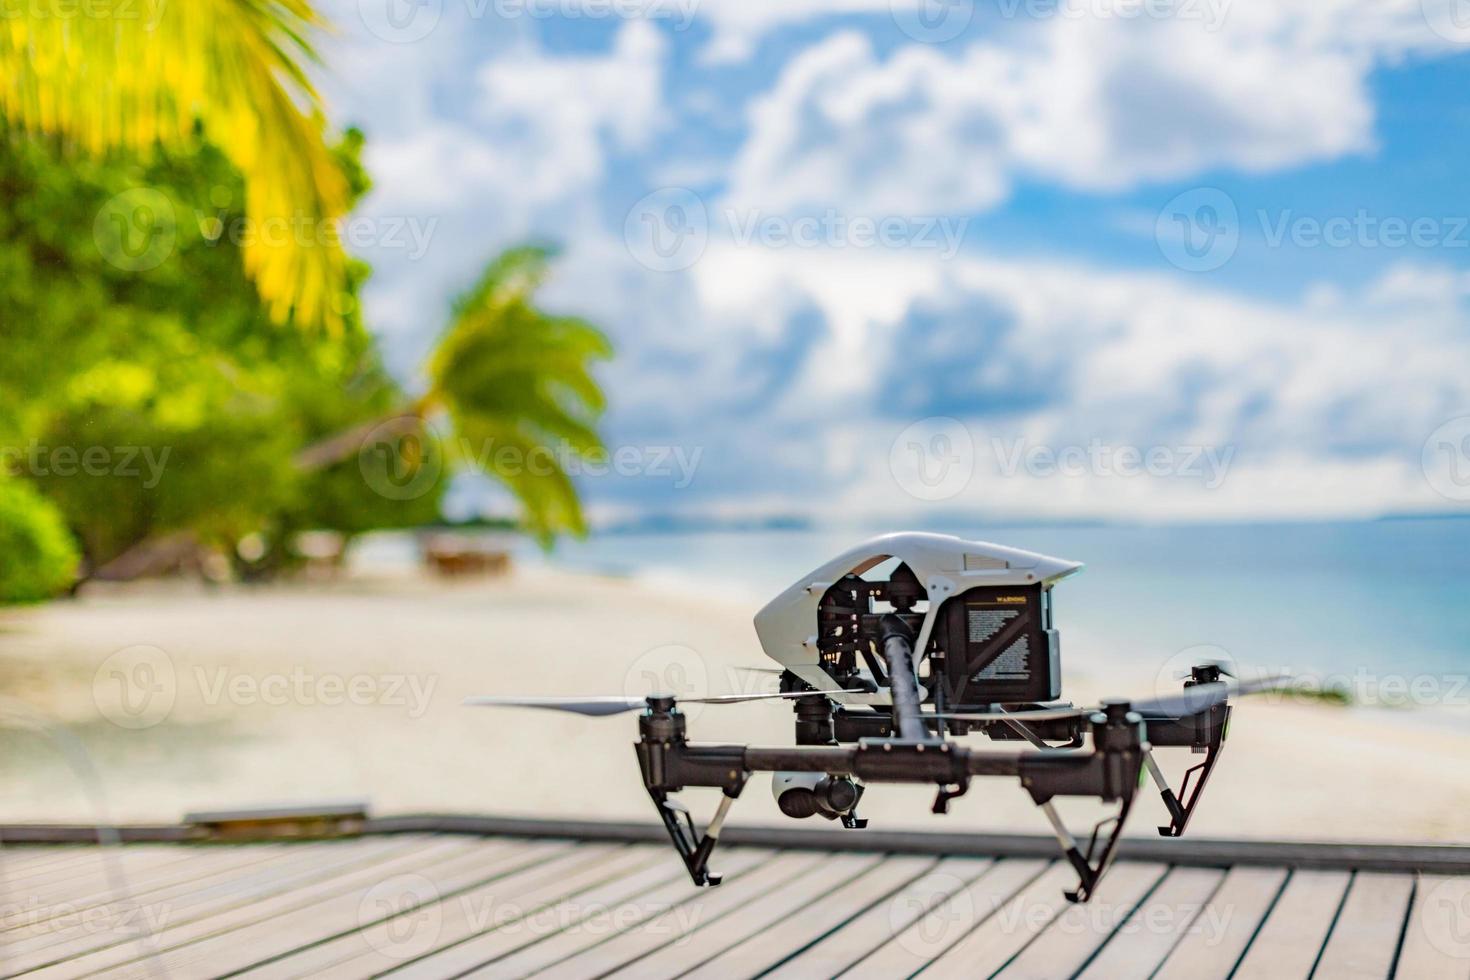 professionale fuco quadcopter con digitale telecamera su tropicale spiaggia. assunzione metraggio di luna di miele Posizione e turista vacanza contenuto. digitale tecnologia per speciale posizioni foto